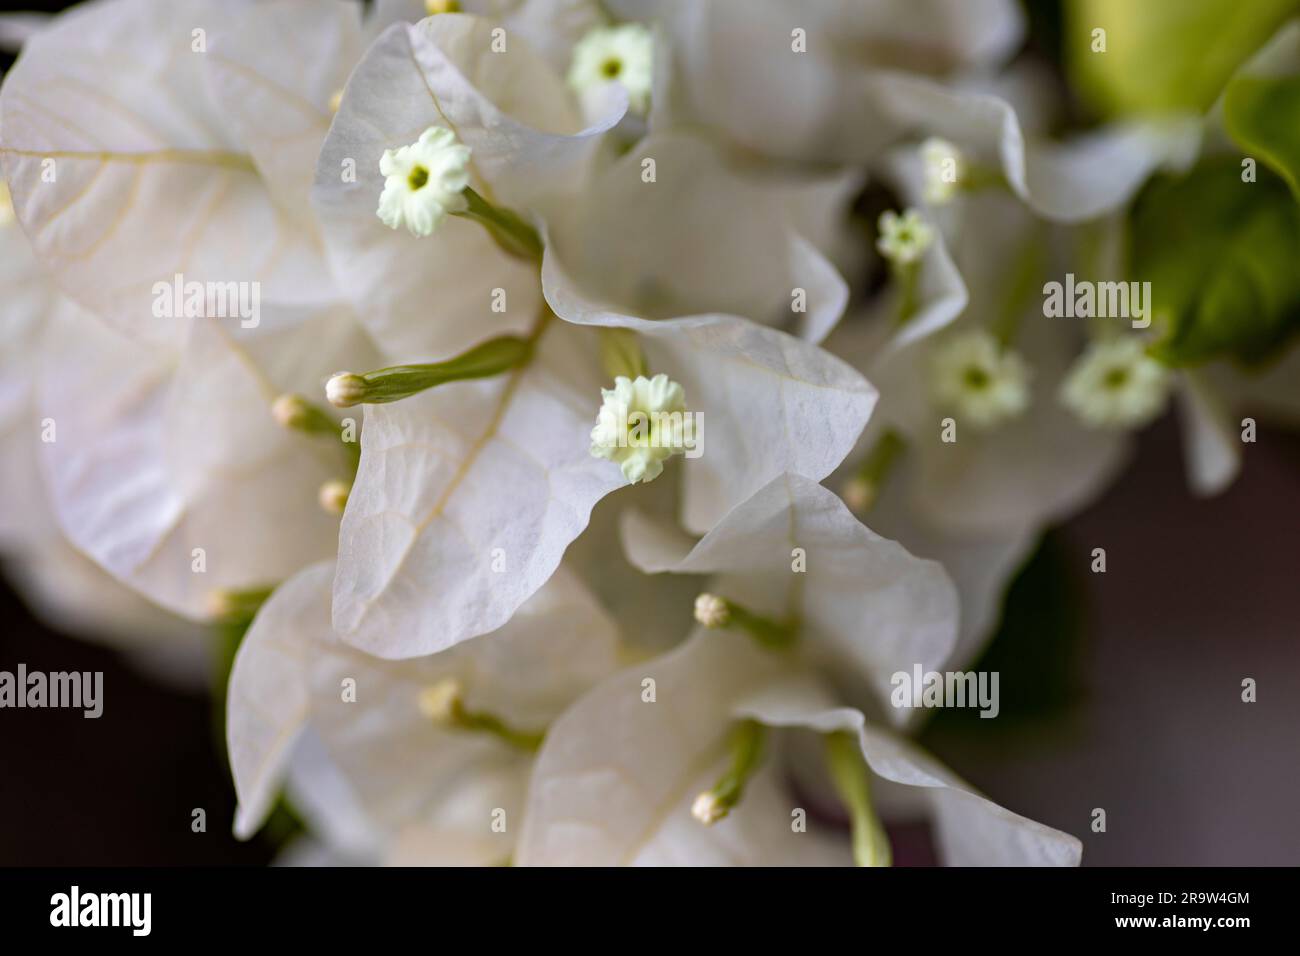 Viele Stränge weißer Bougainvillea-Blüten, die ganzjährig sind, klettern, bewaldet sind und große Höhen erreichen. Konzept abwechslungsreiche und farbenfrohe Pflanzen. Stockfoto